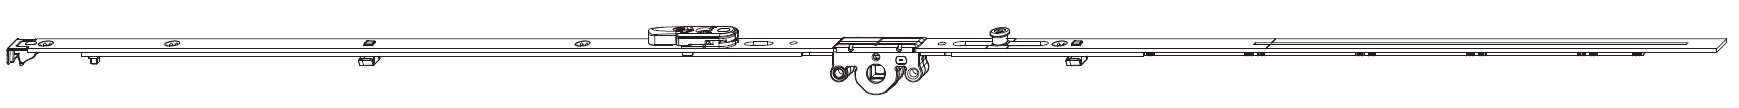 MAICO -  Cremonese MULTI-MATIC anta ribalta antieffrazione altezza maniglia fissa con piedino e dss per ribalta - gr / dim. 1590 - entrata 15 - alt. man. 500 - lbb/hbb 1341 - 1590